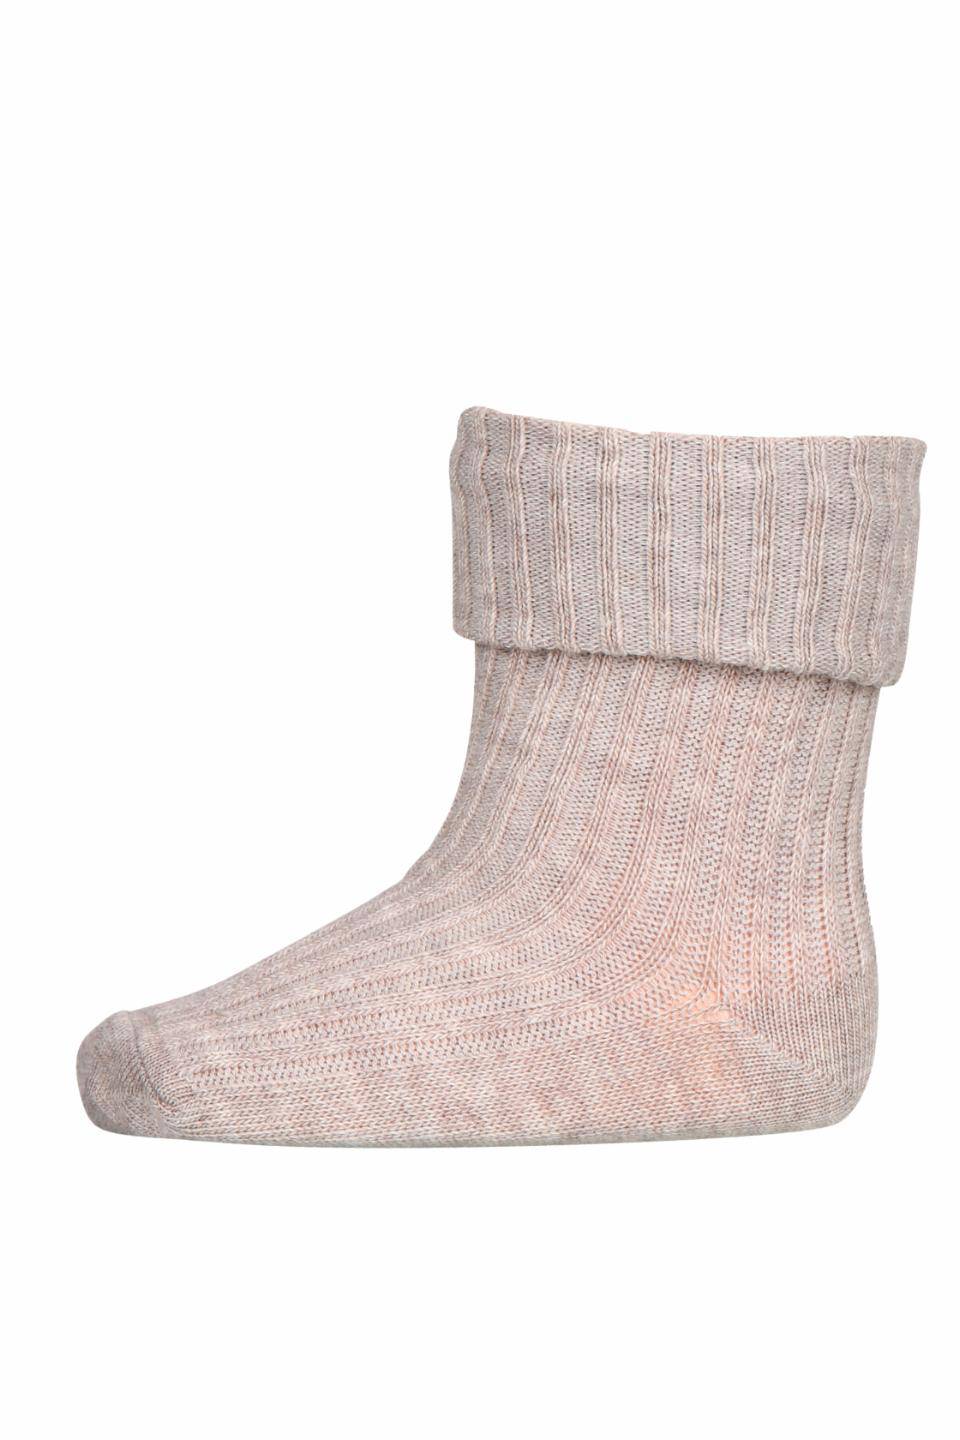 MP Denmark - cotton rib socks - 10-533-0 489 - light brown melange - Hyggekids